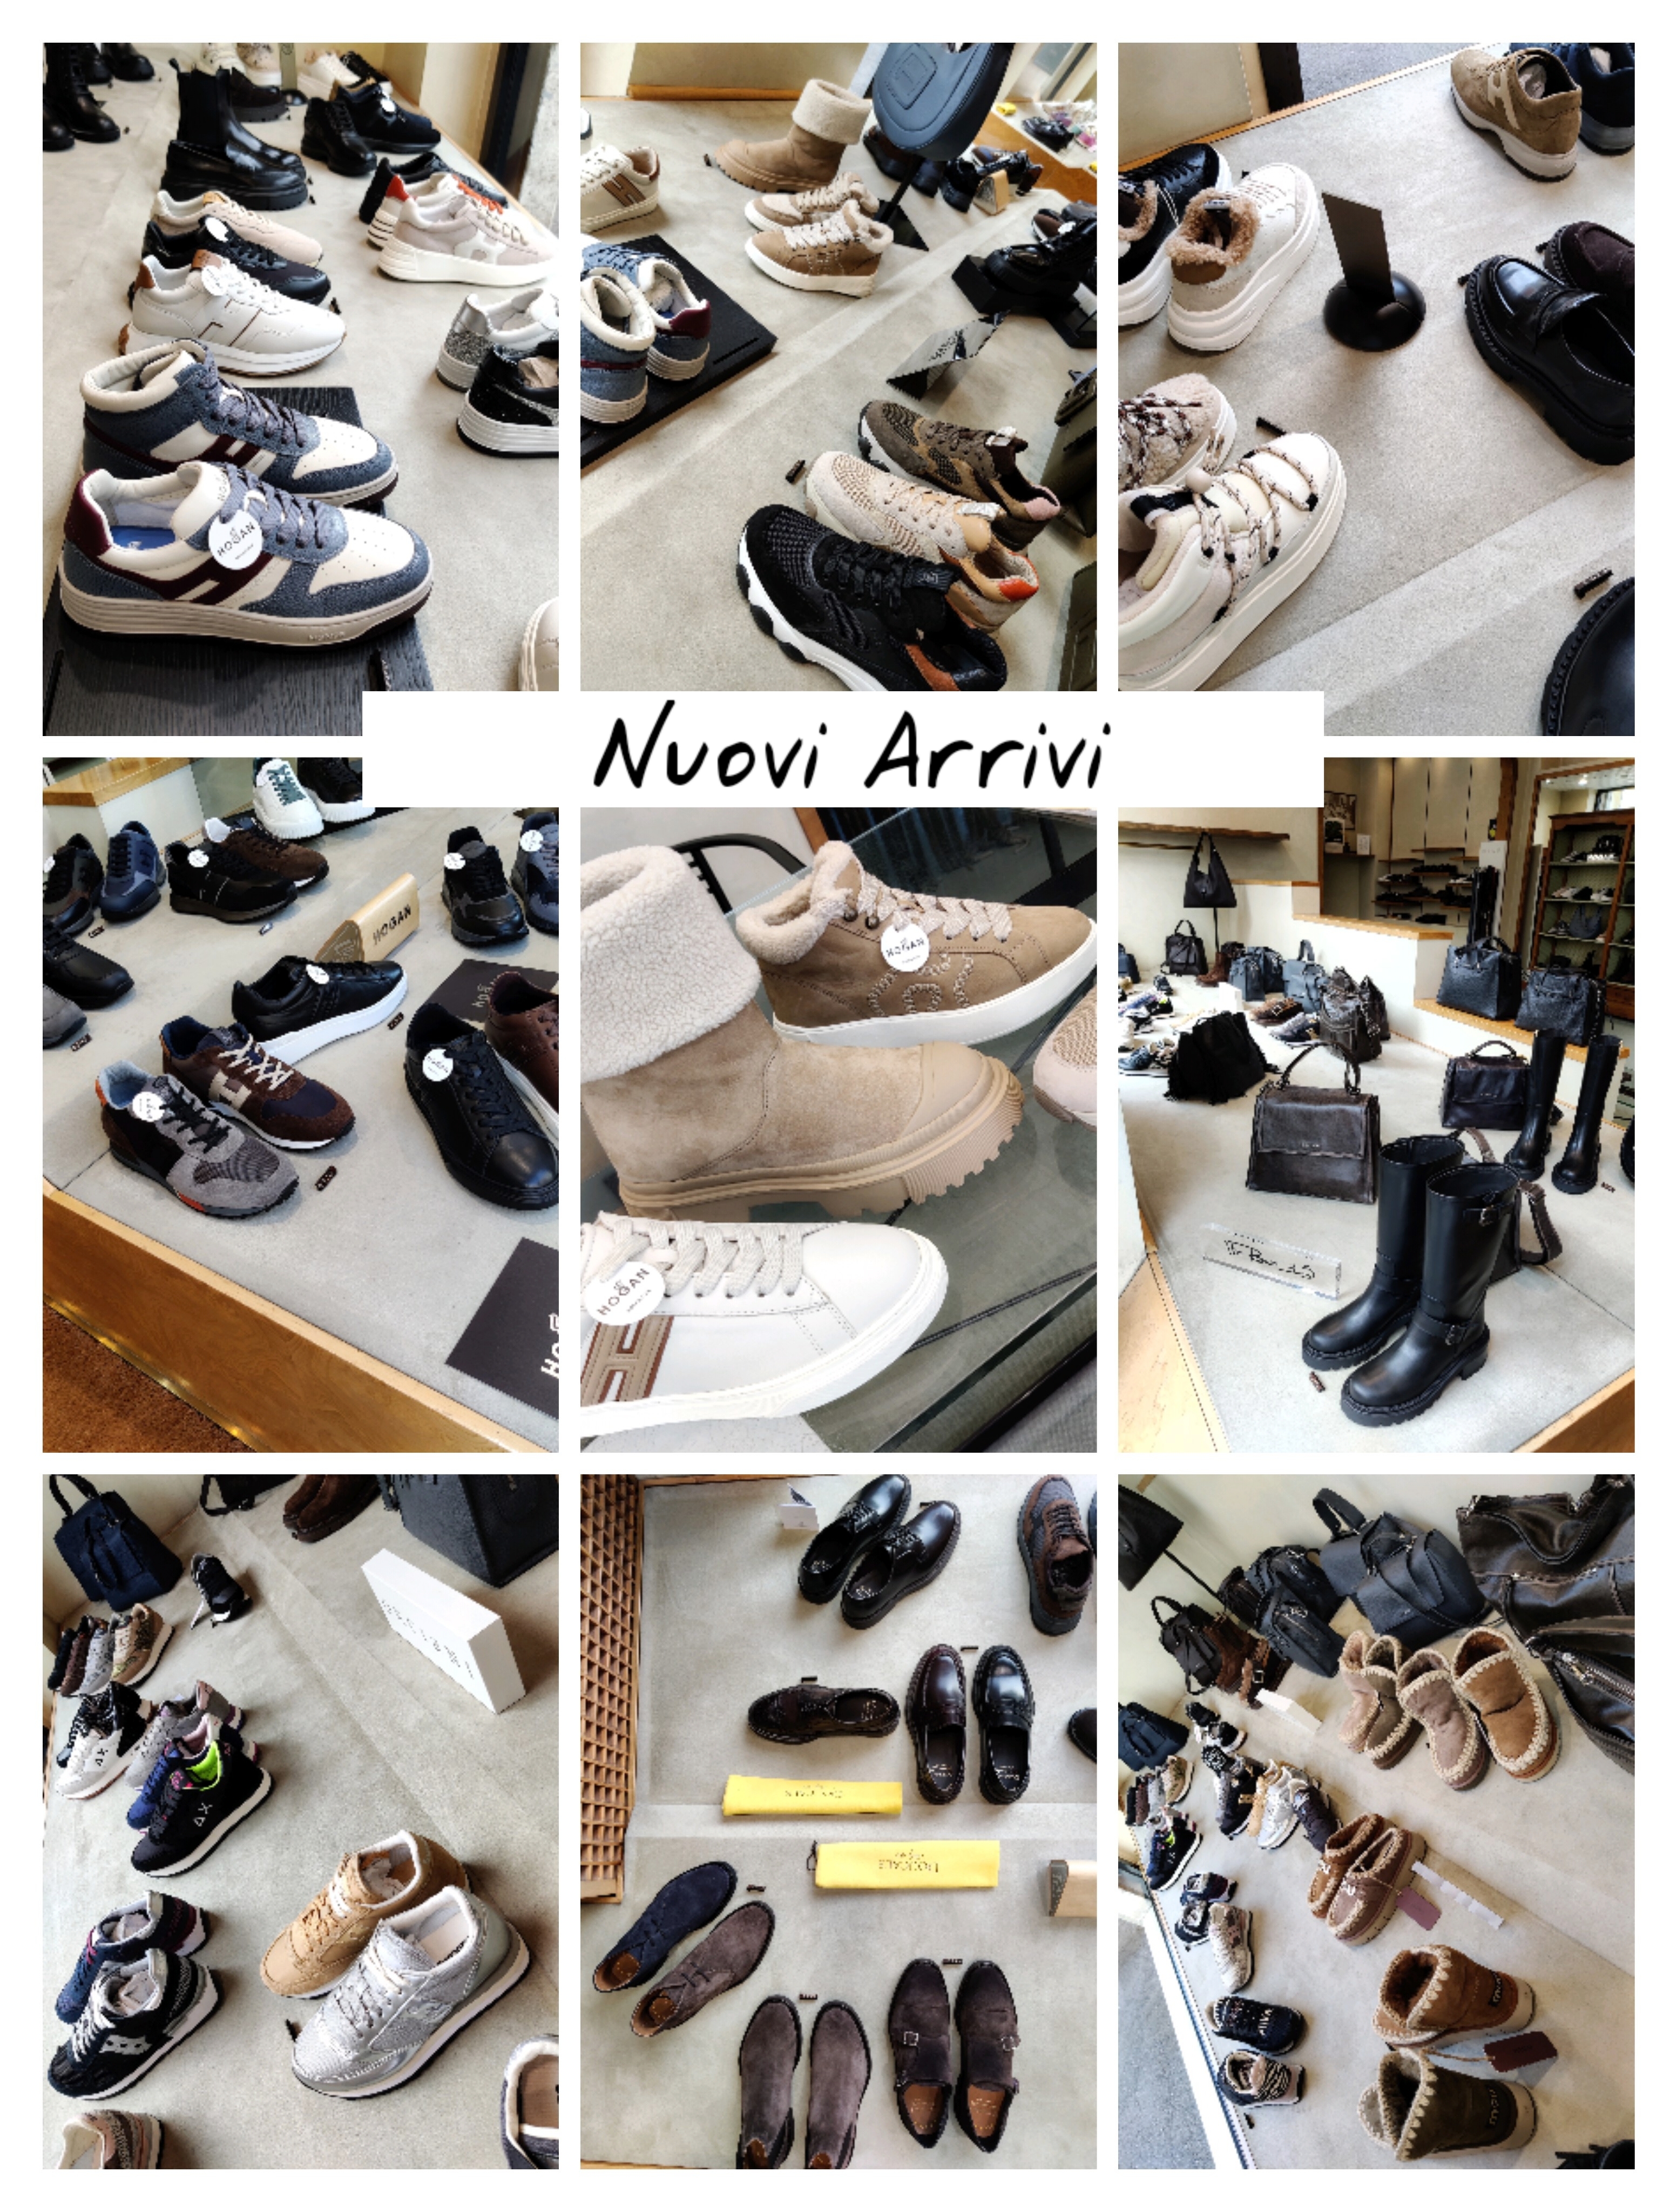 Nuovi Arrivi in negozio HOGAN ASH DOUCAL'S MOU e i migliori marchi di borse e calzature nel nostro negozio in via Dolci 4 Milano rivenditore autorizzato dal 1953